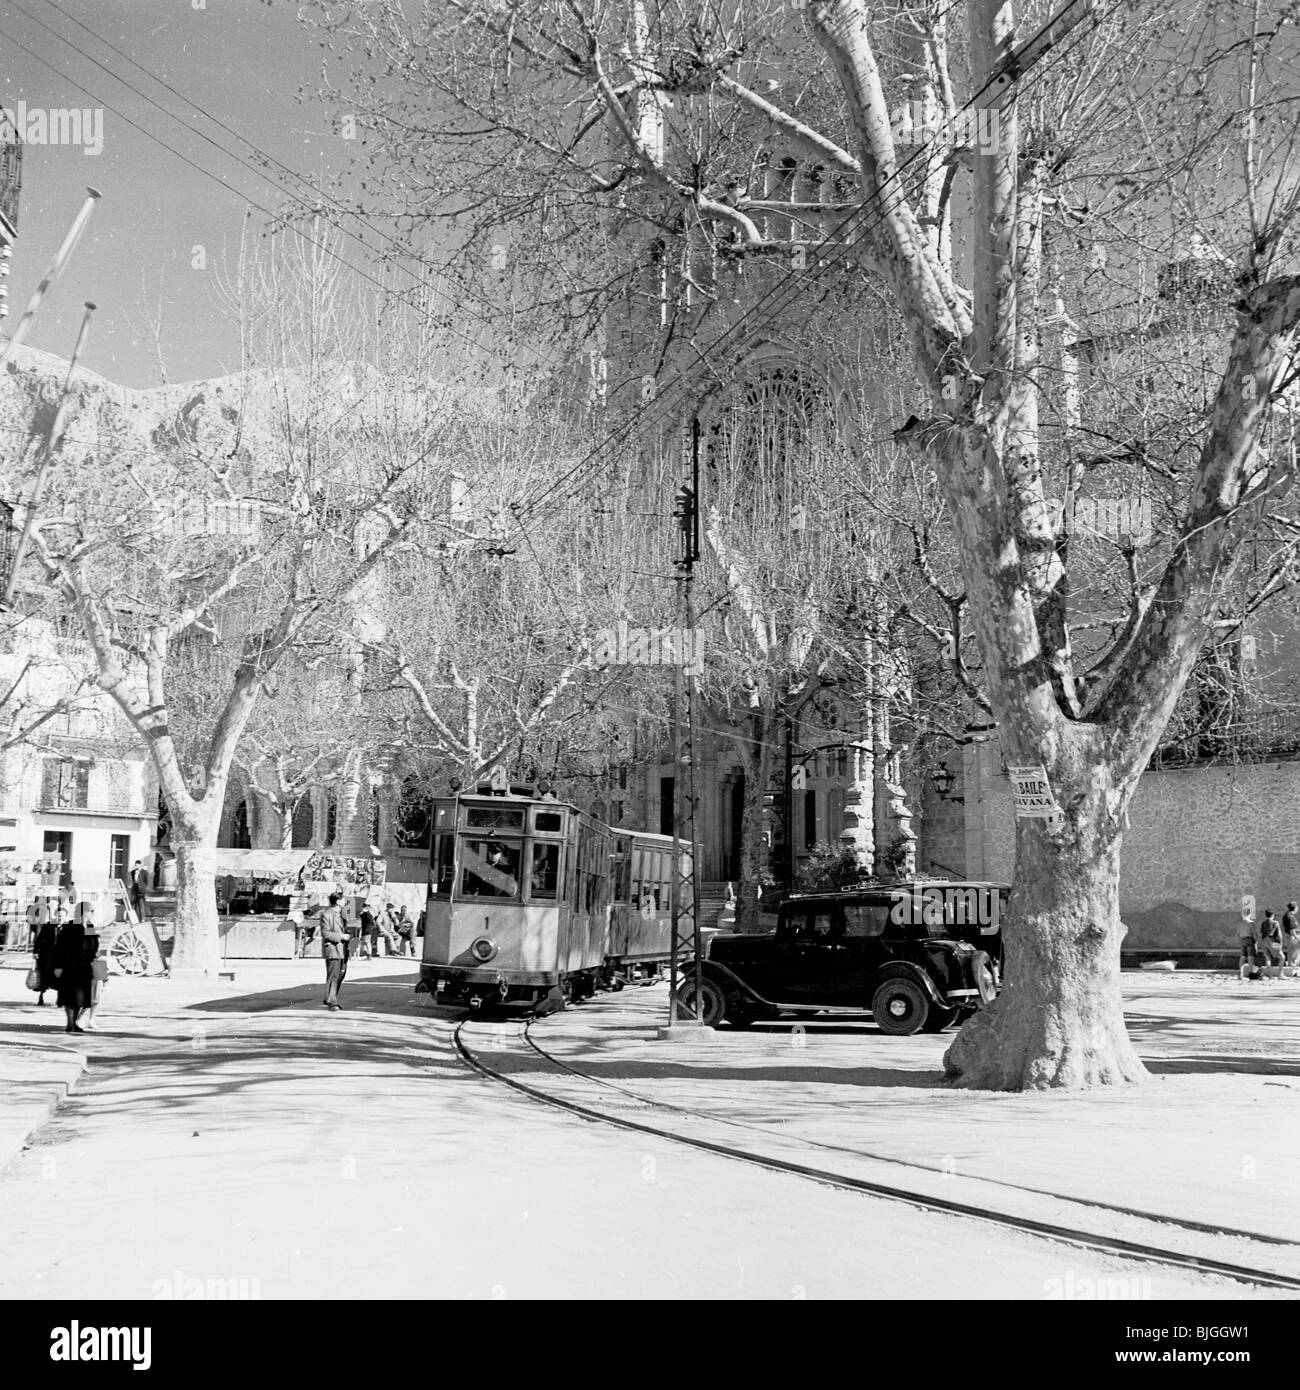 Straßenbahn zieht in eine spanische Stadt in den 1950er Jahren in diesem historischen Bild von J Allan Cash. Stockfoto